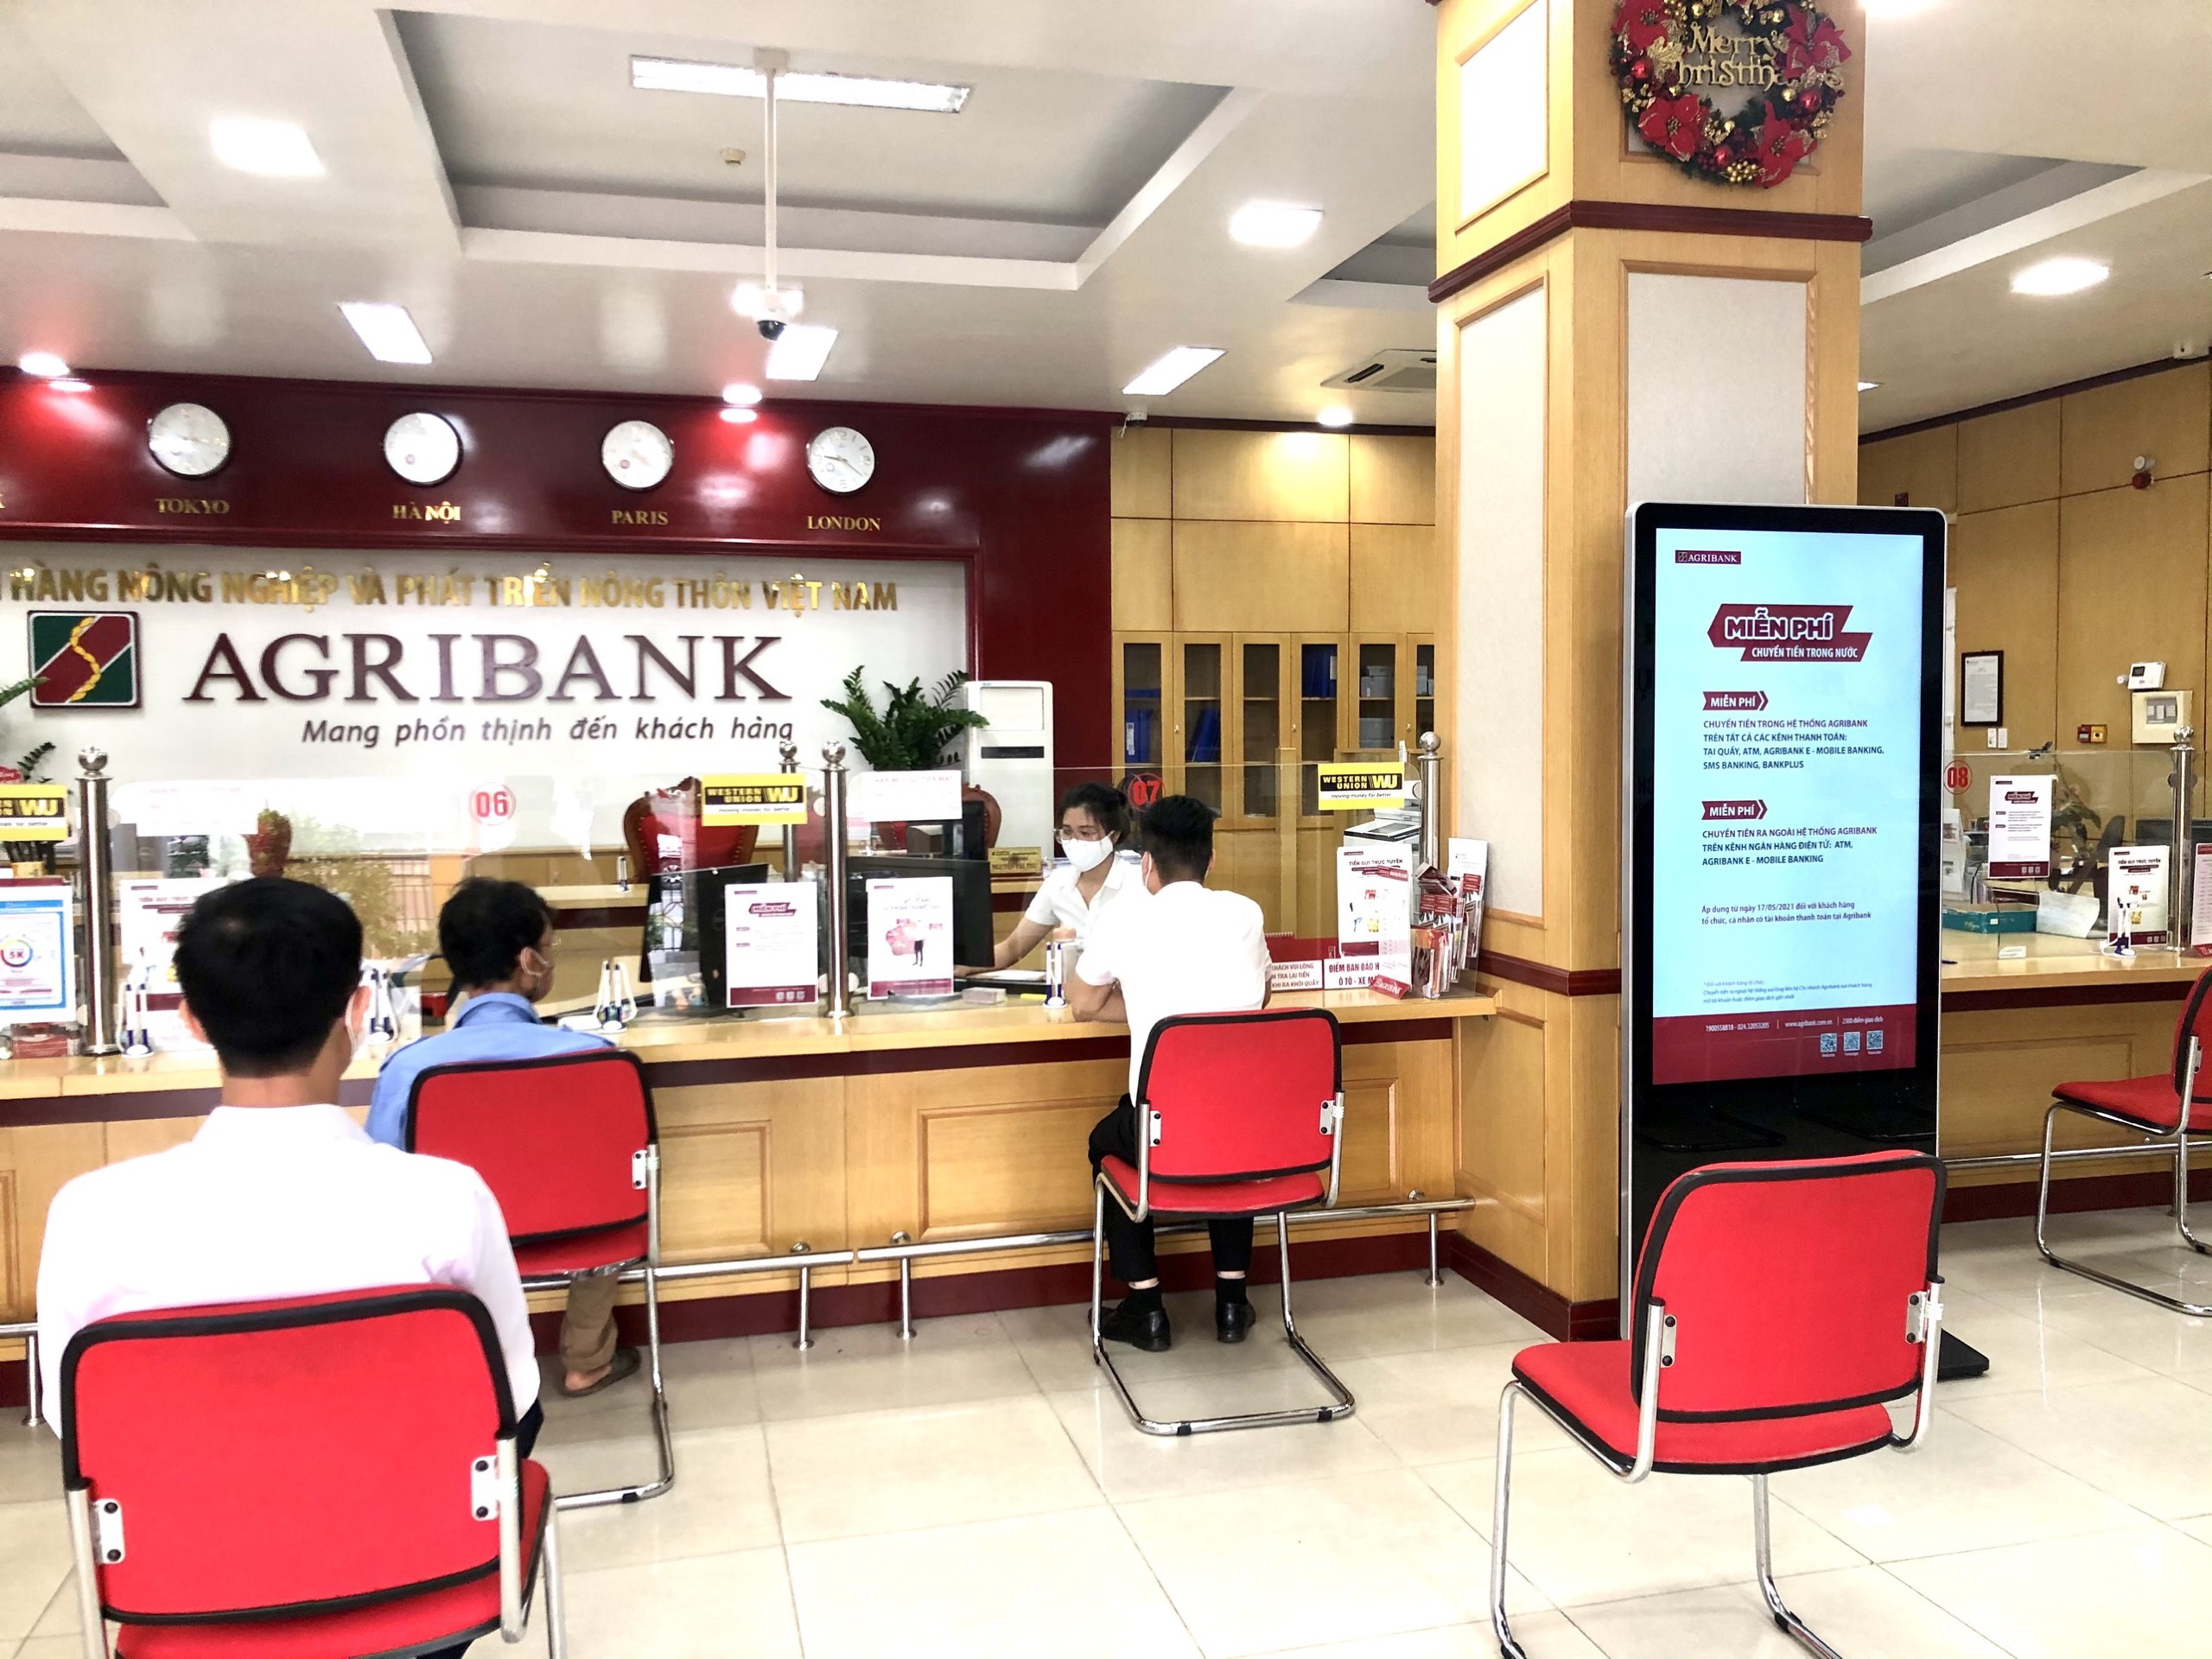 Hướng dẫn thủ tục vay trả góp ngân hàng Agribank - TaichinhPro